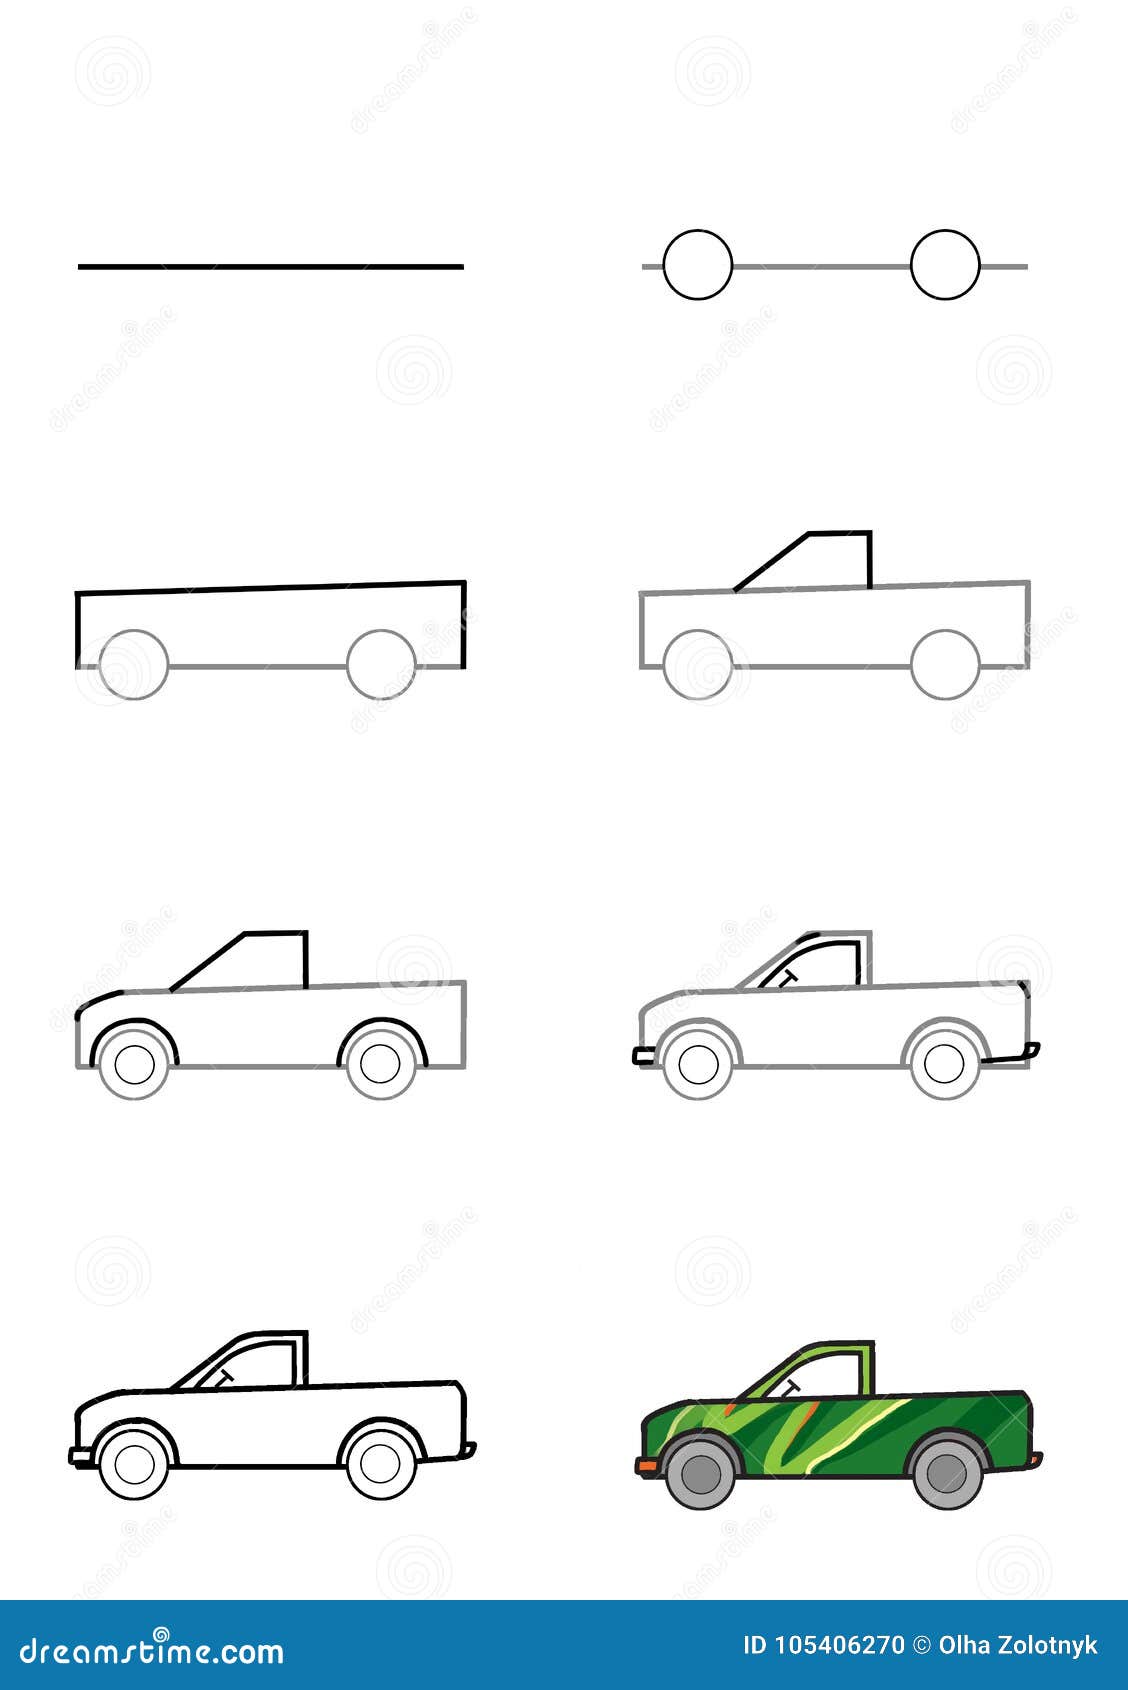 Машинка начала прыгать. Машины для рисования. Рисование автомобиля. Схема рисования машины. Этапы рисования машины.